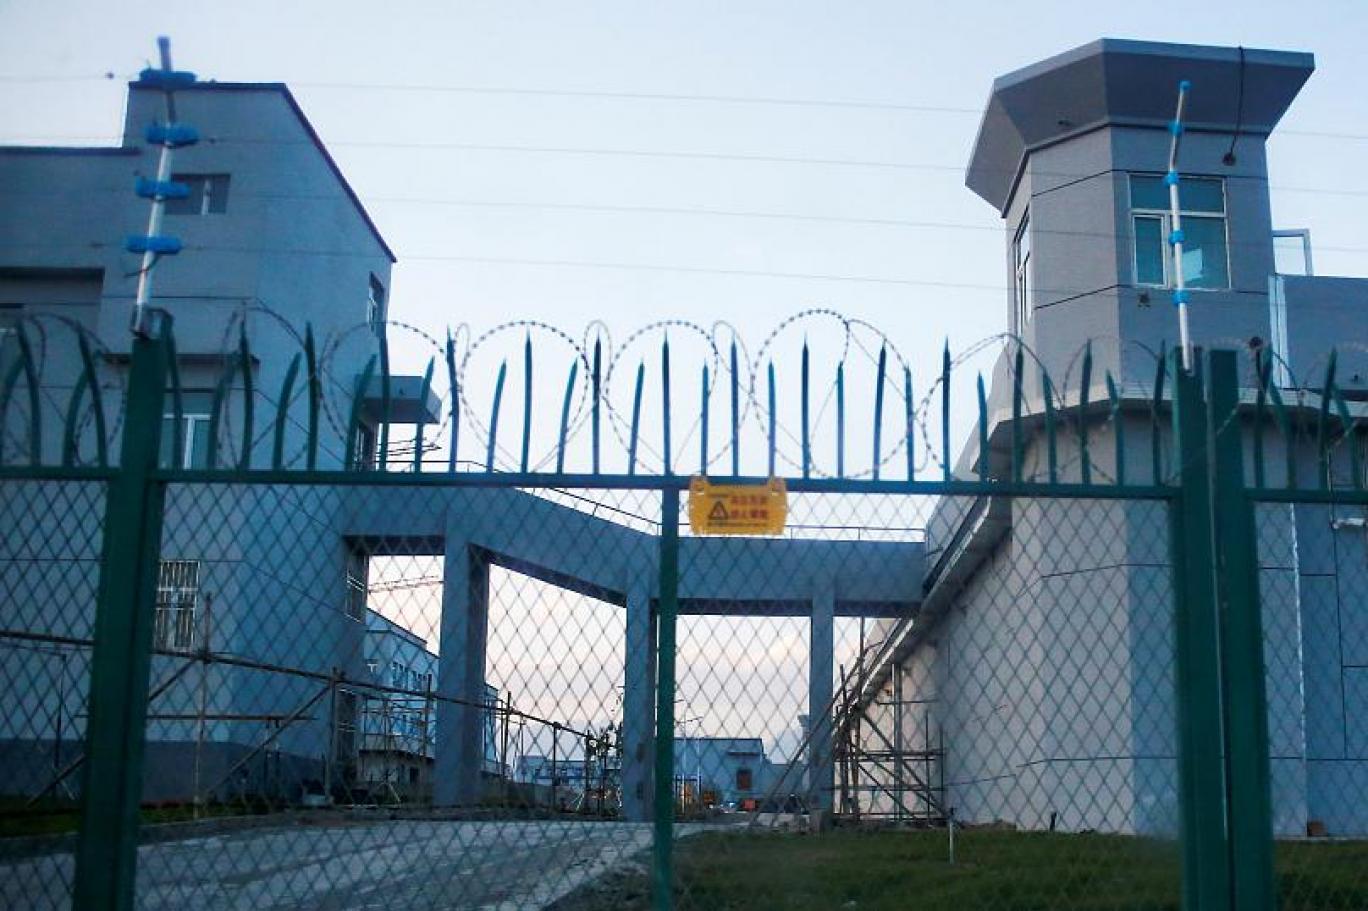 Çin'in Doğu Türkistan'da kurduğu kampları anlattı: 15 ay güneşi görmedim,  her anı işkenceydi | Independent Türkçe